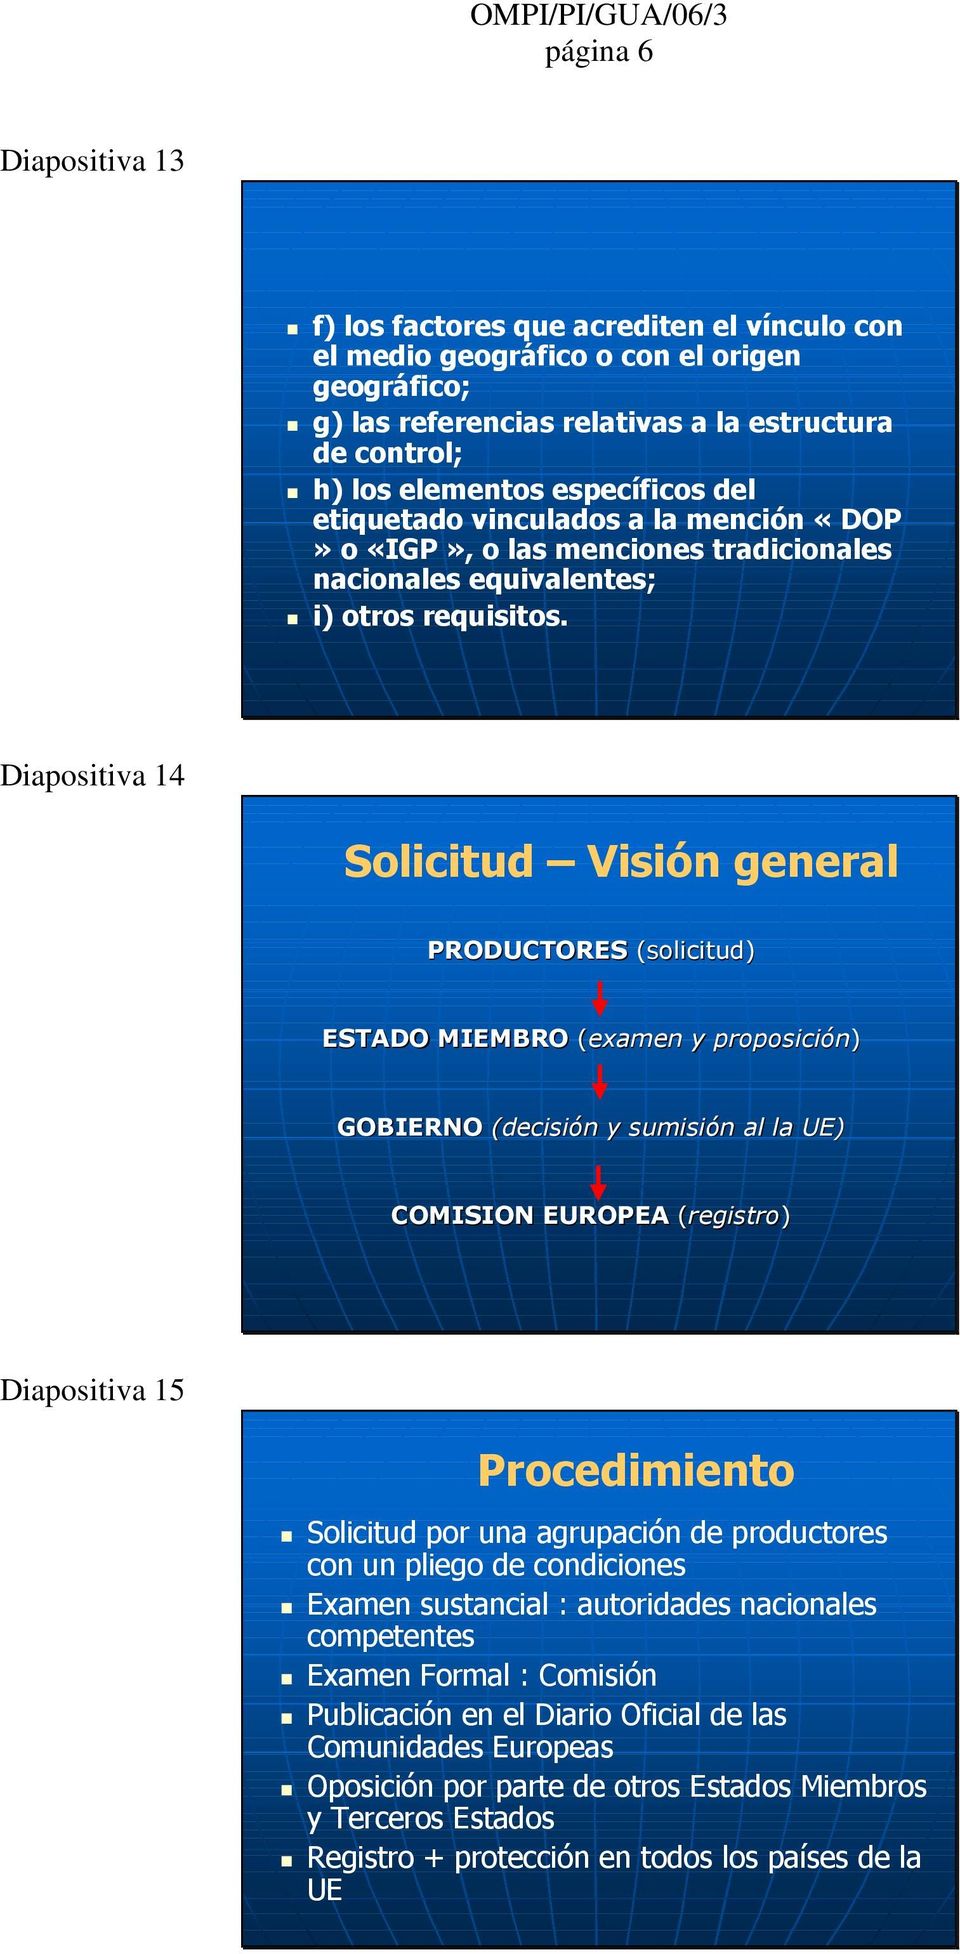 Diapositiva 14 Solicitud Visión general PRODUCTORES (solicitud) ESTADO MIEMBRO (examen y proposición) GOBIERNO (decisión y sumisión al la UE) COMISION EUROPEA (registro) Diapositiva 15 Procedimiento